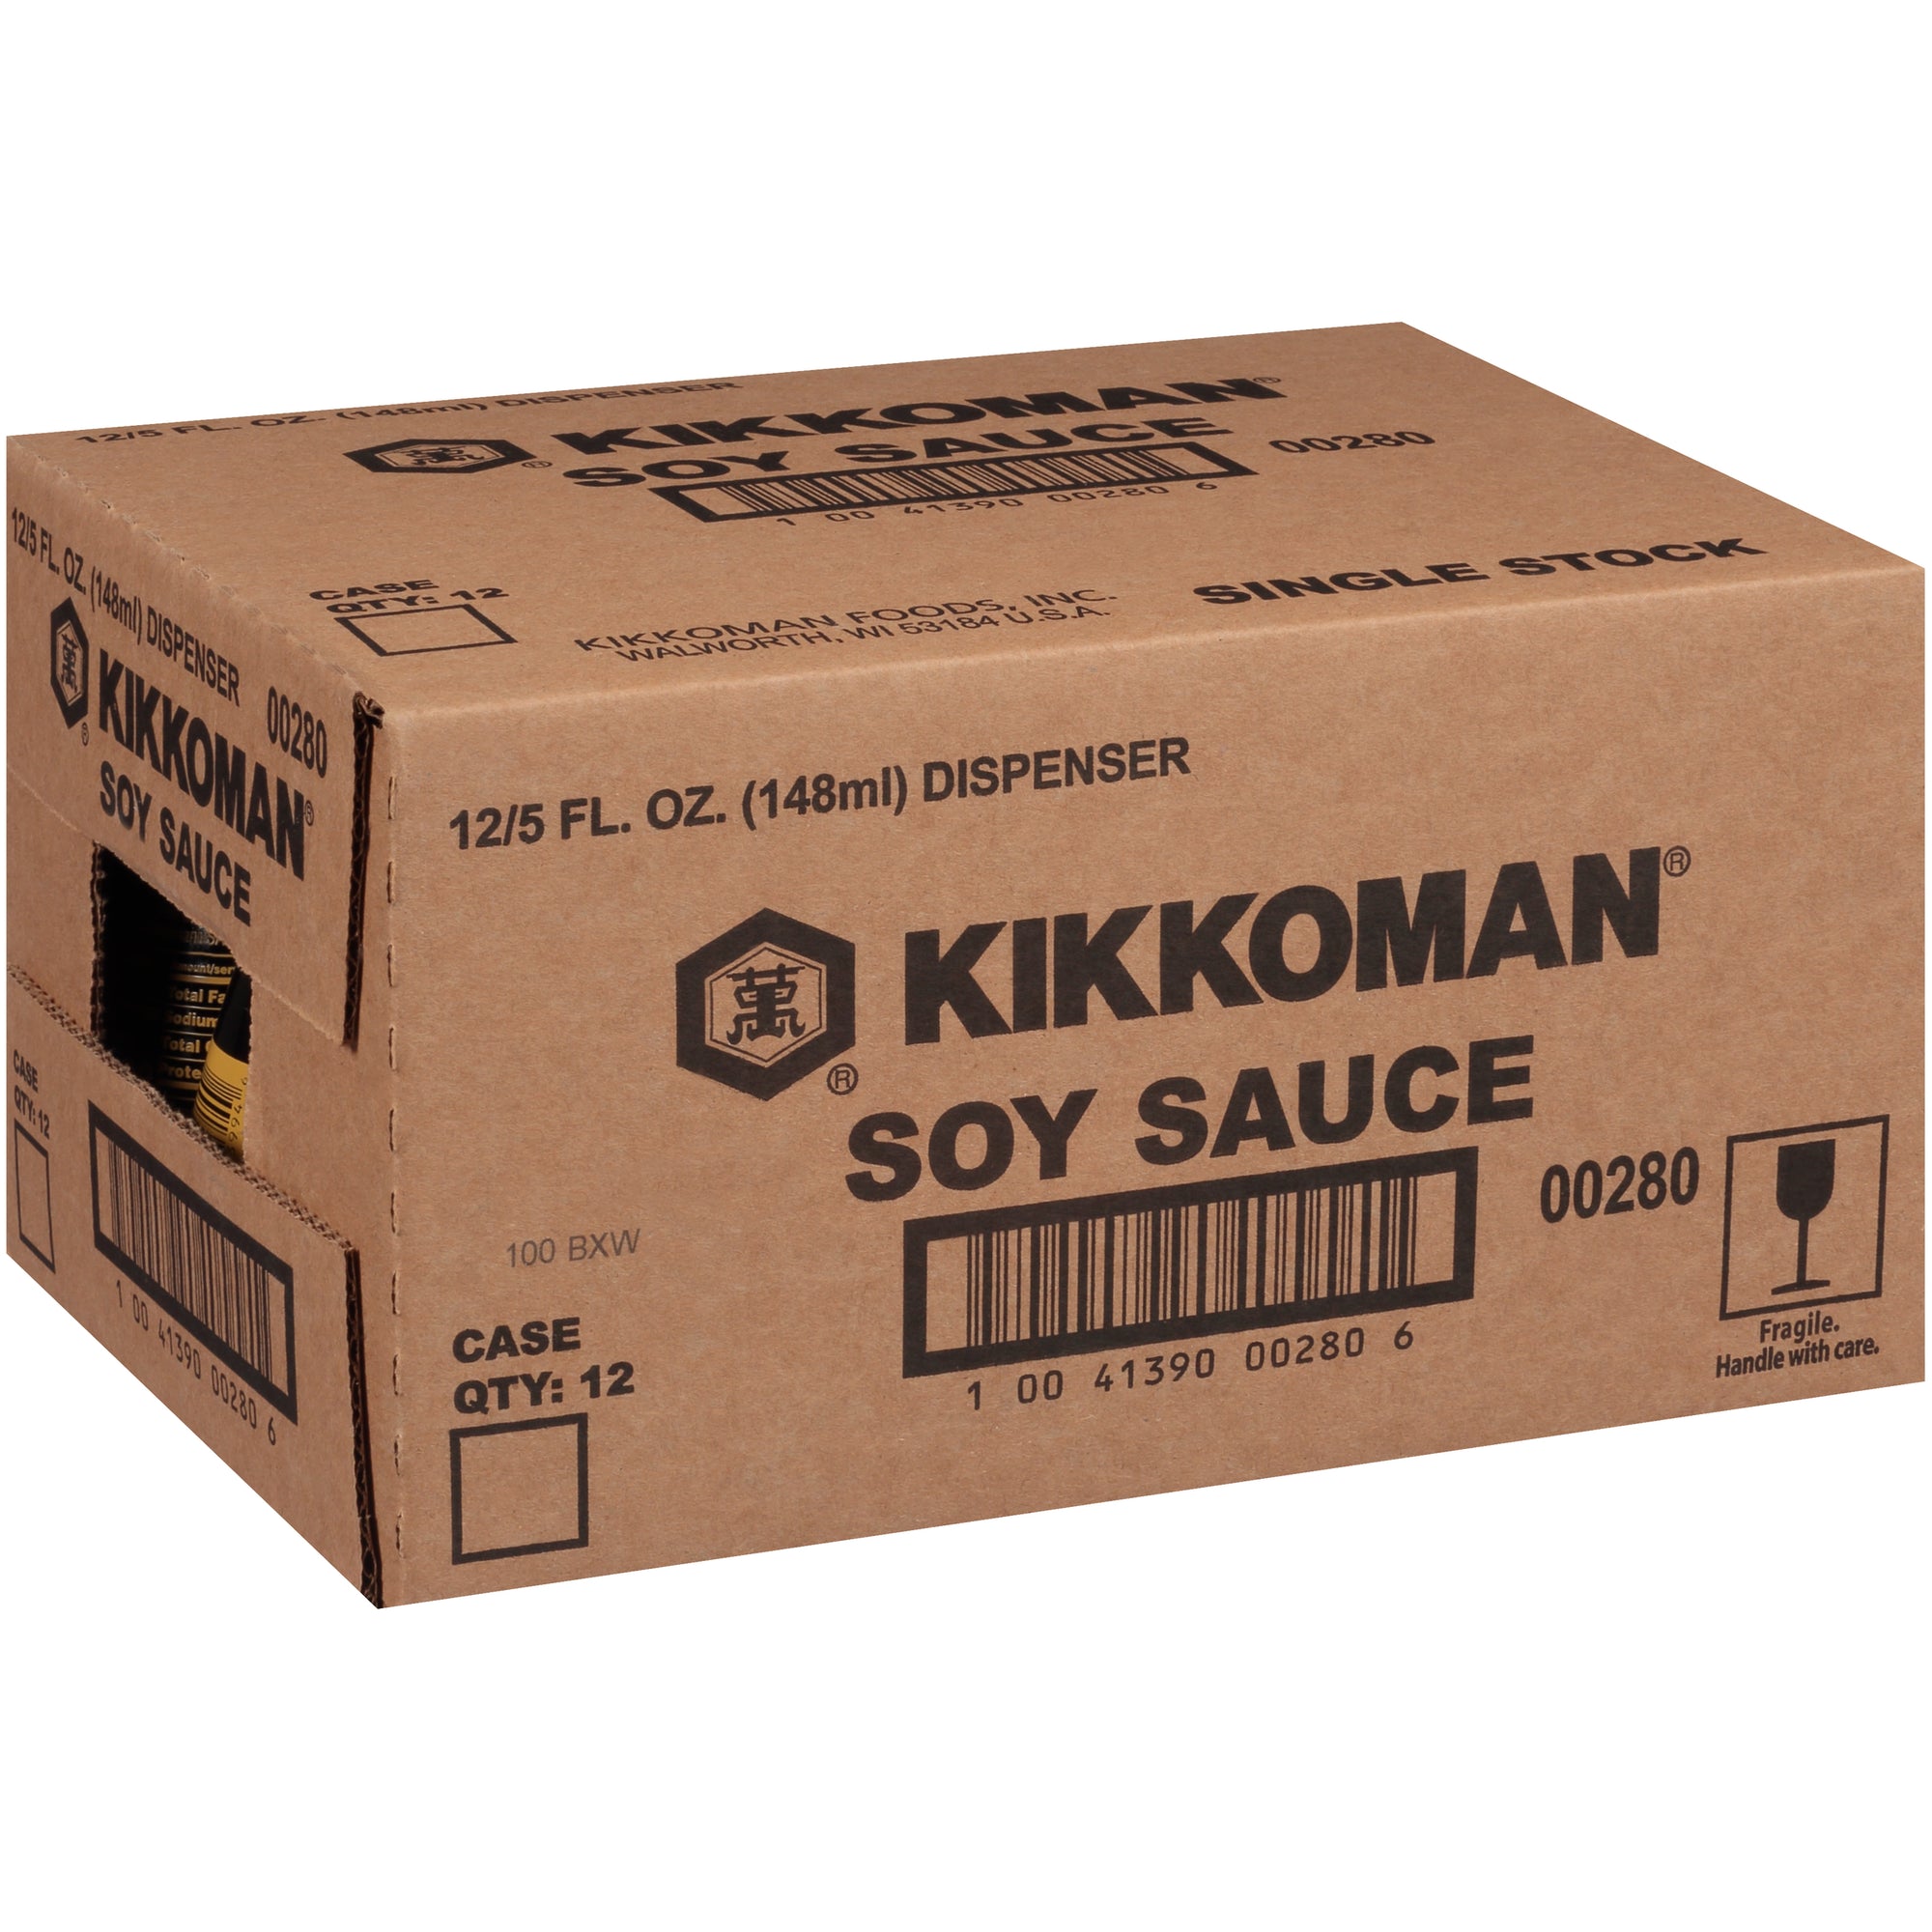 Kikkoman Soy Sauce Dispenser 5 FL OZ - Case of 12